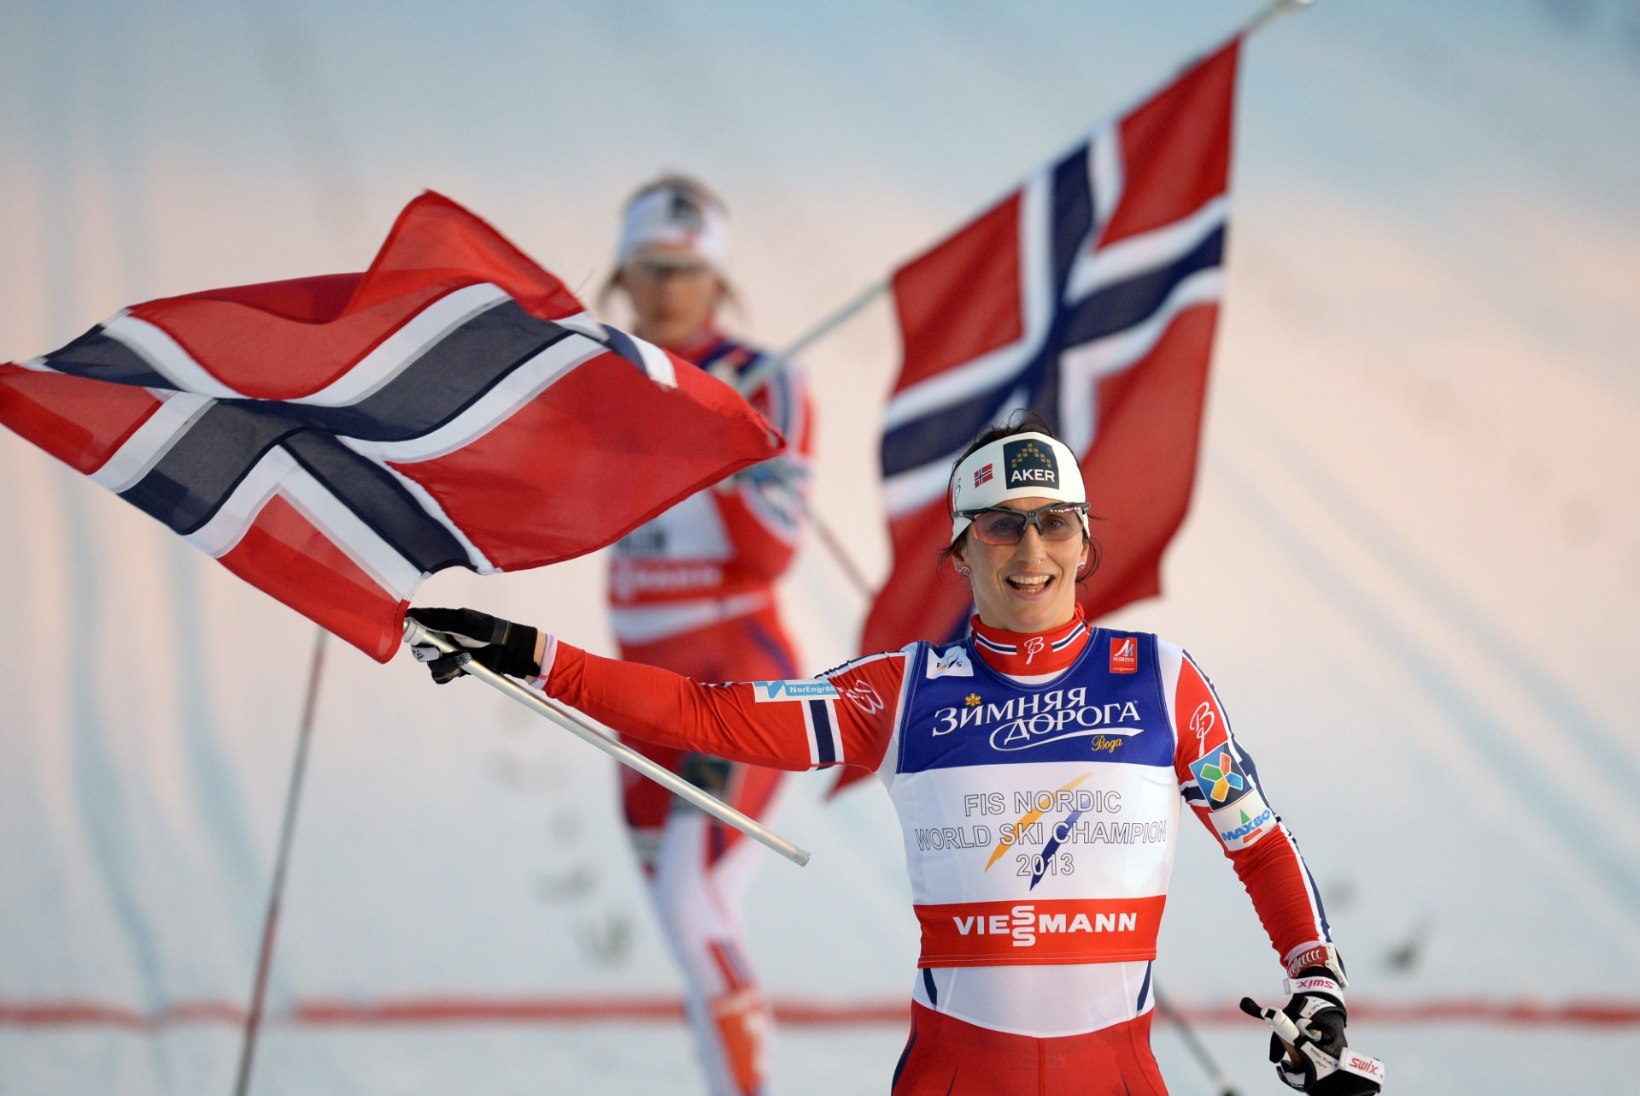 GALERII: Norrakate võidupidu Rootsis